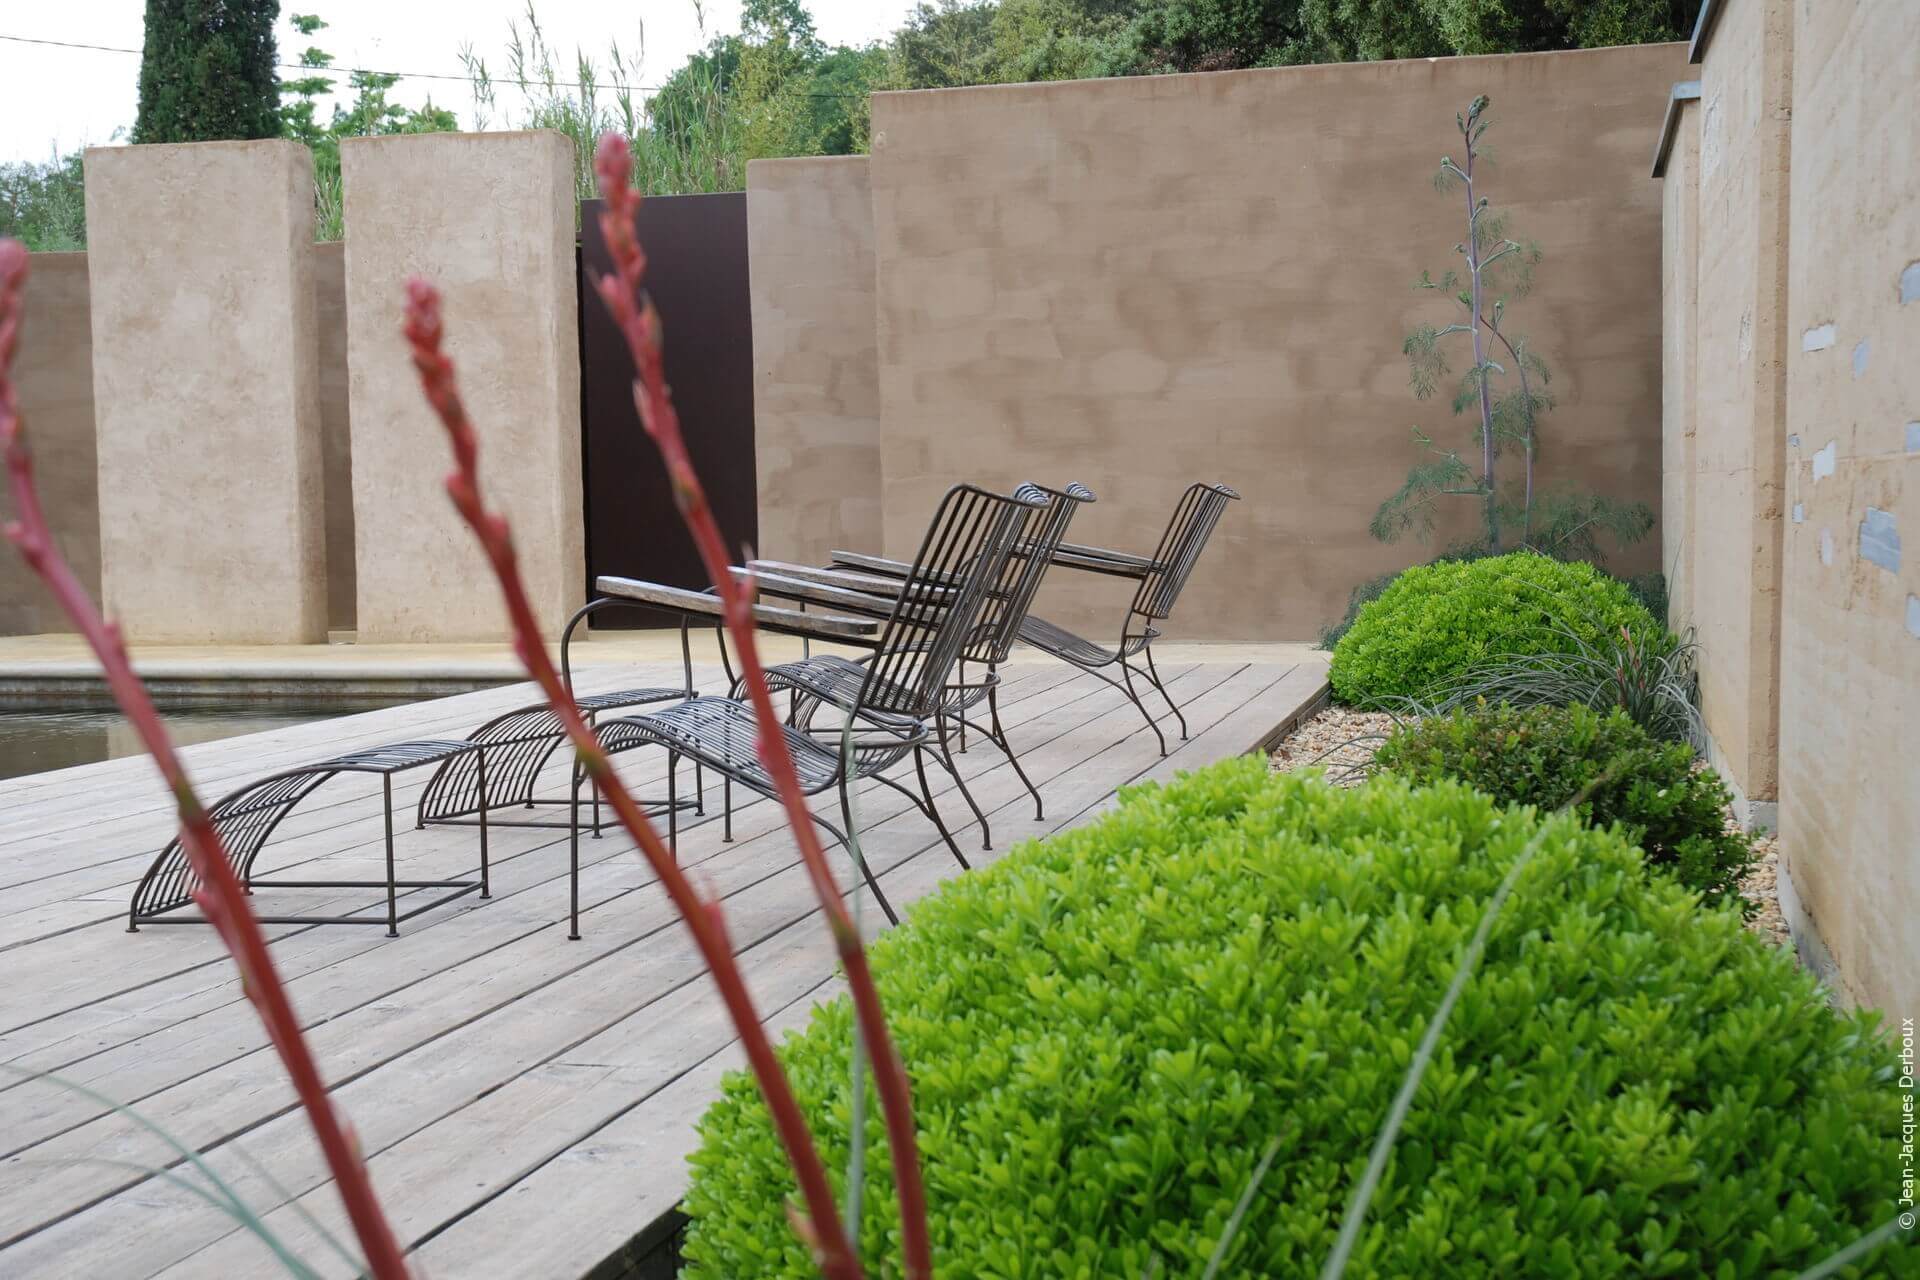 Chaise longue en métal, terrasse bois bord de piscine, mur enduit pigment naturel, végétaux topiaires.